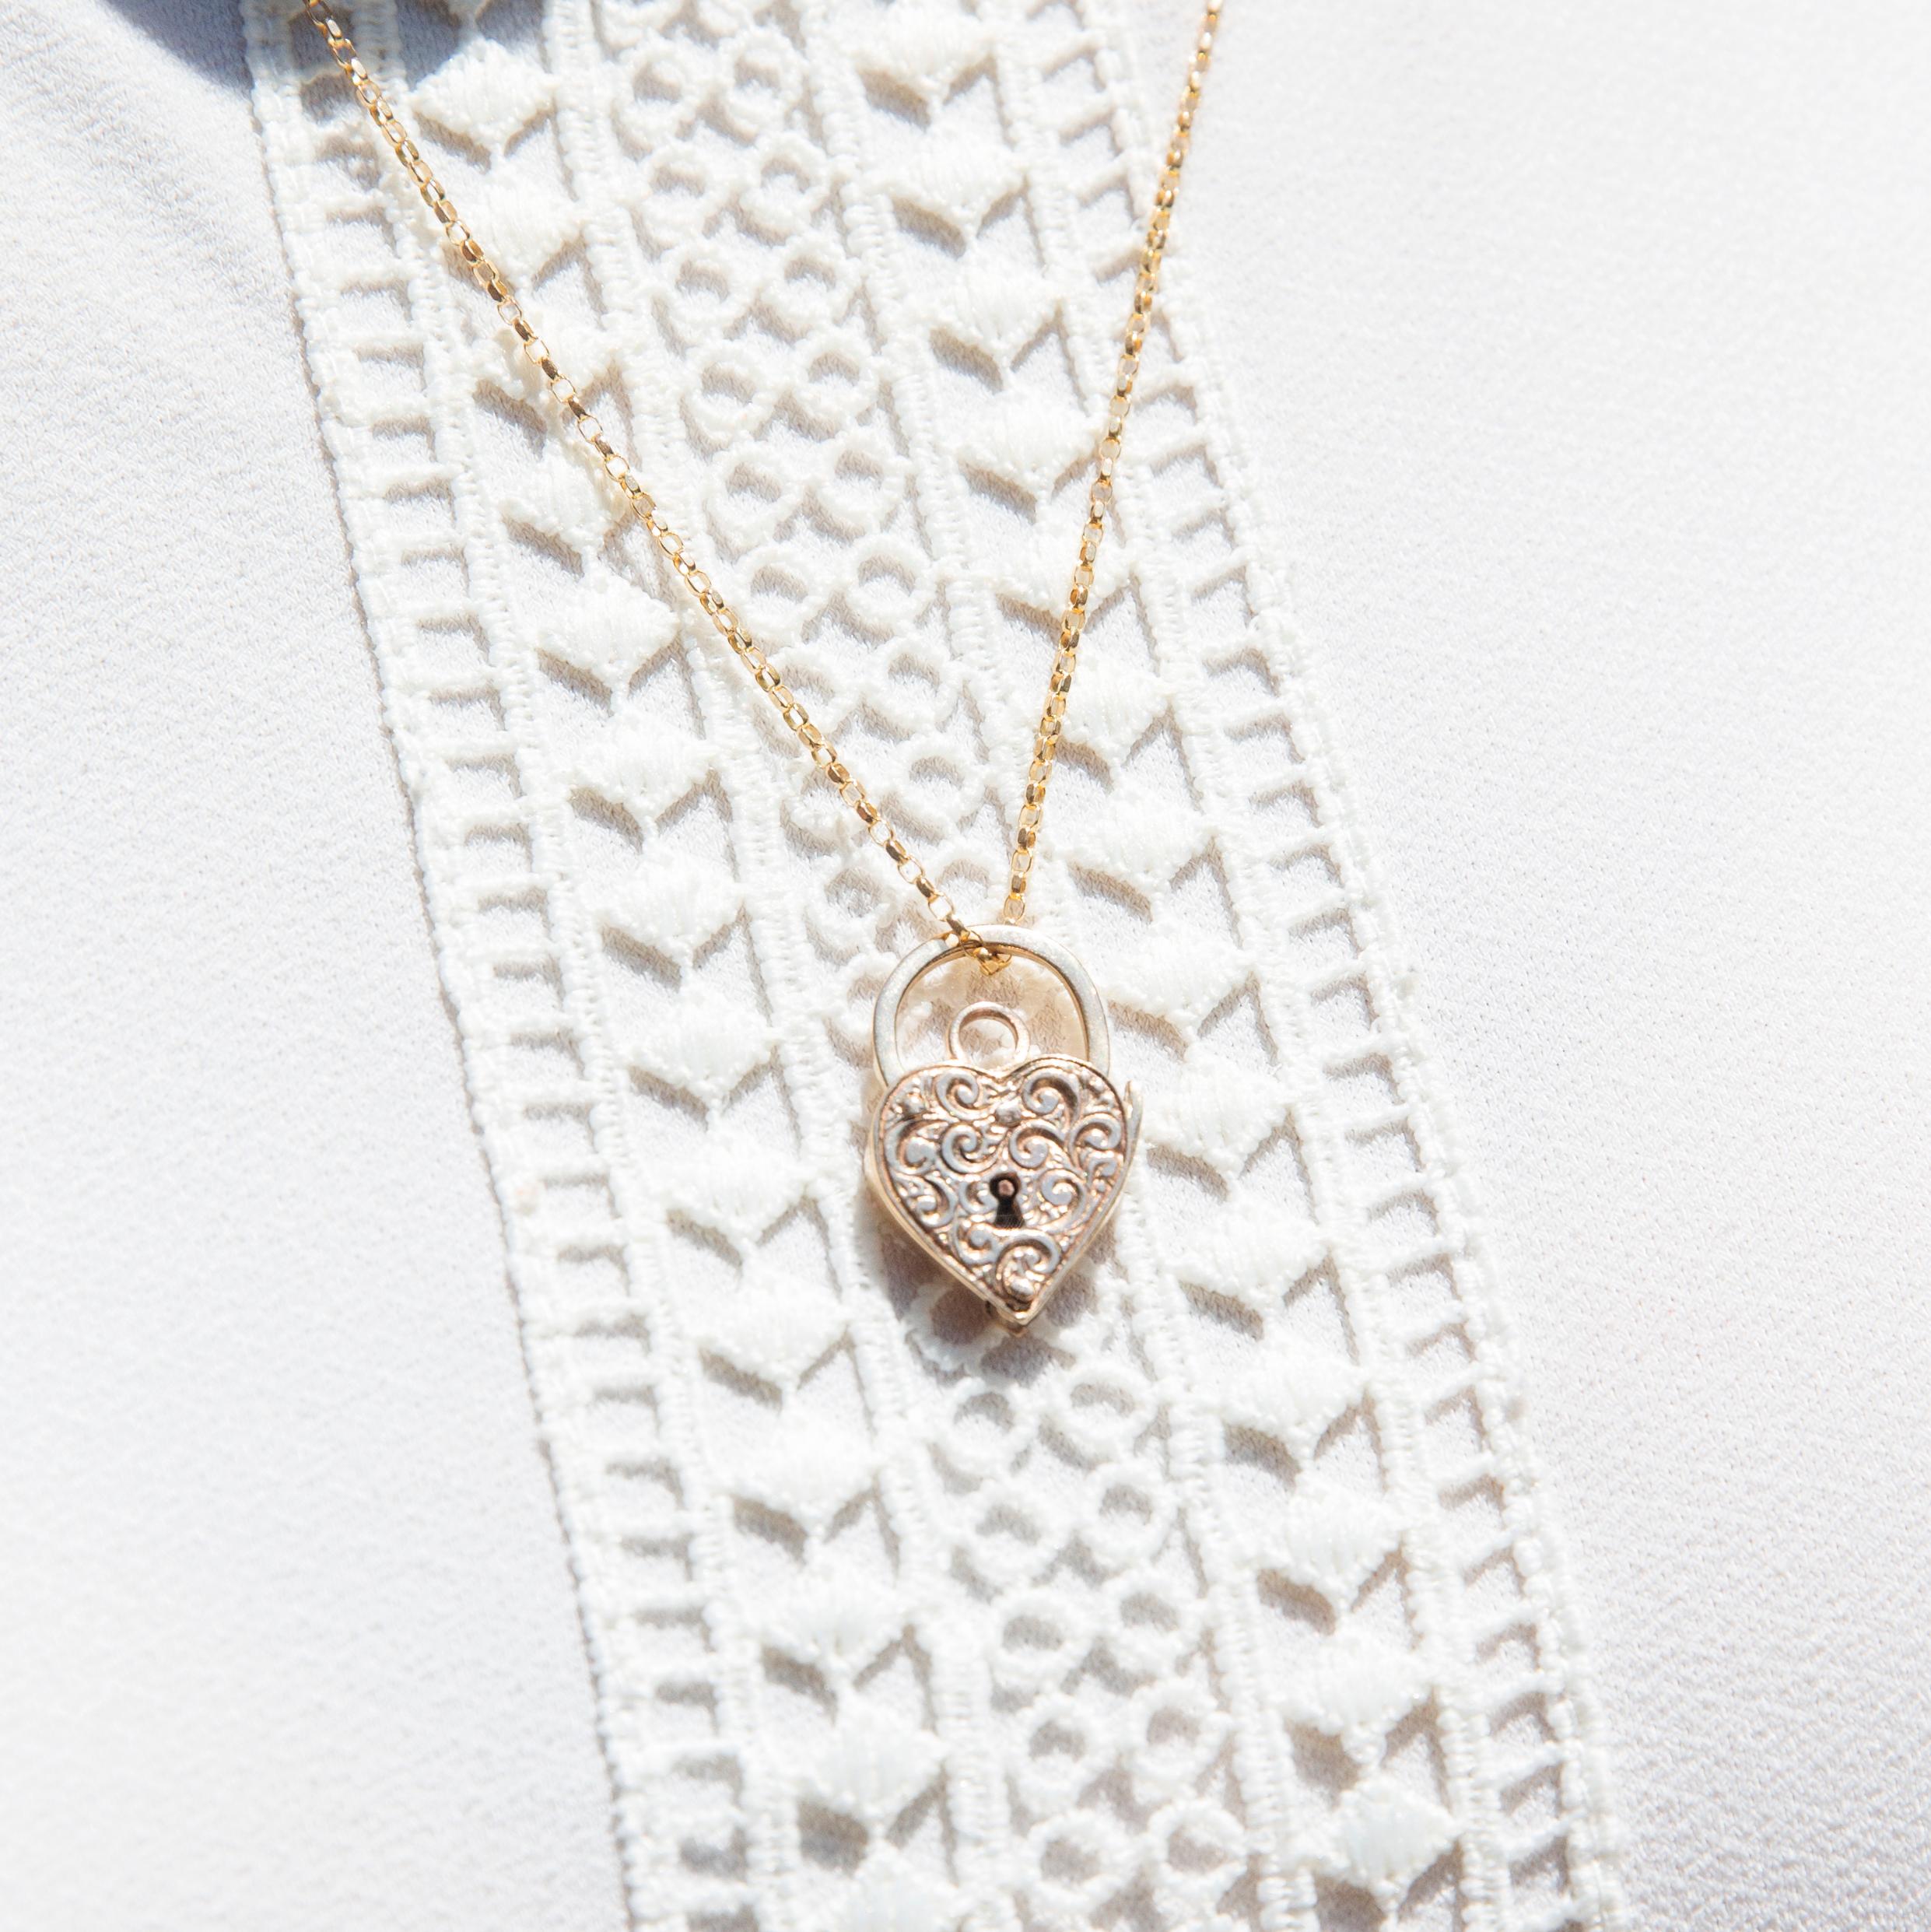 Notre cadenas et chaîne Carly, datant des années 1960, a été réalisé avec soin en or 9 carats. Son pendentif en forme de cœur est magnifiquement orné de rubans d'or tourbillonnants. Elle est un cadeau exquis pour l'être aimé, où votre cœur peut